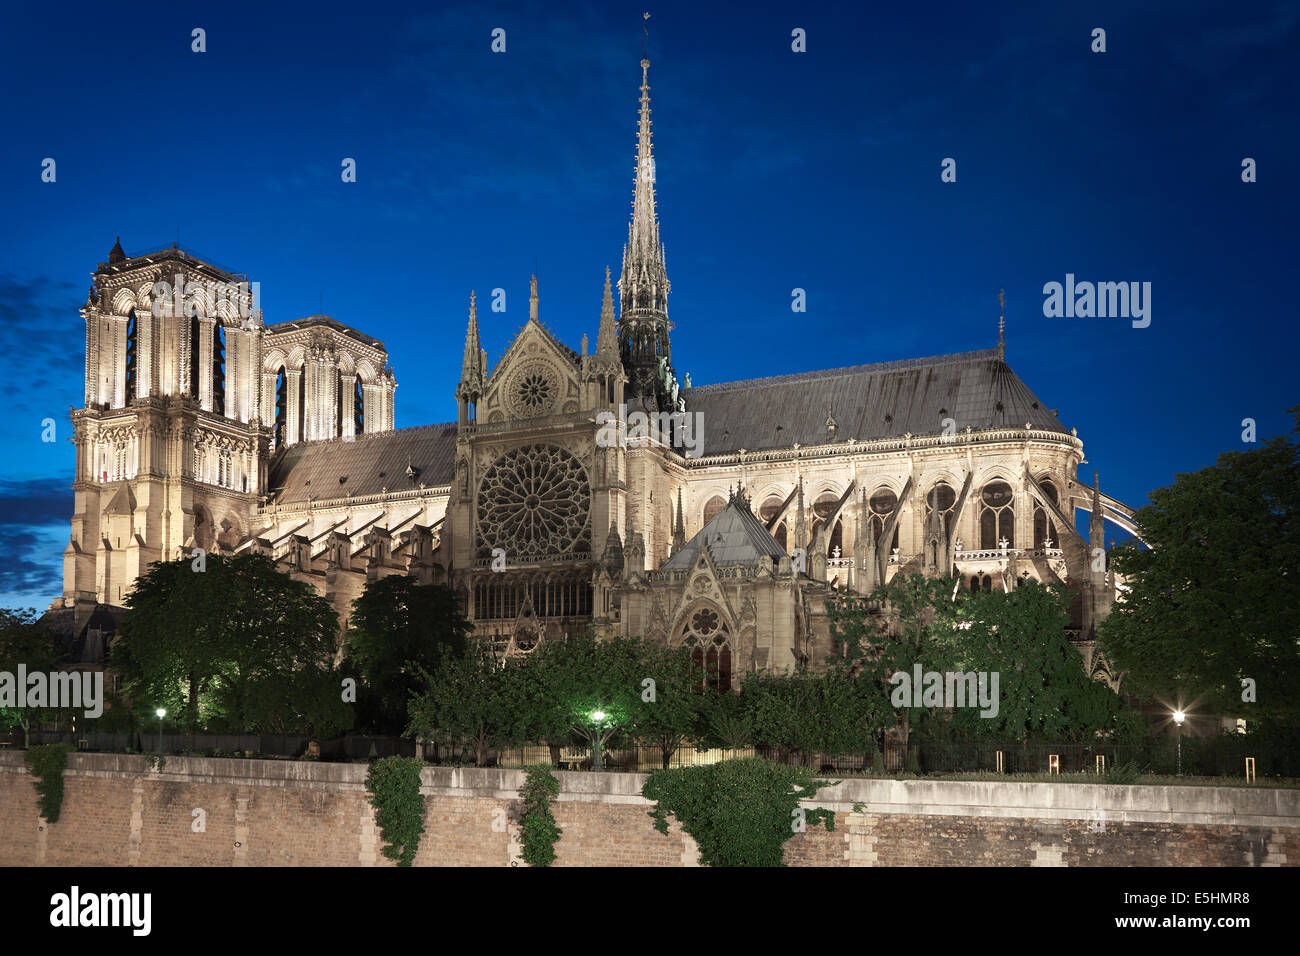 La cathédrale Notre Dame de Paris en France dans la nuit, side view Banque D'Images